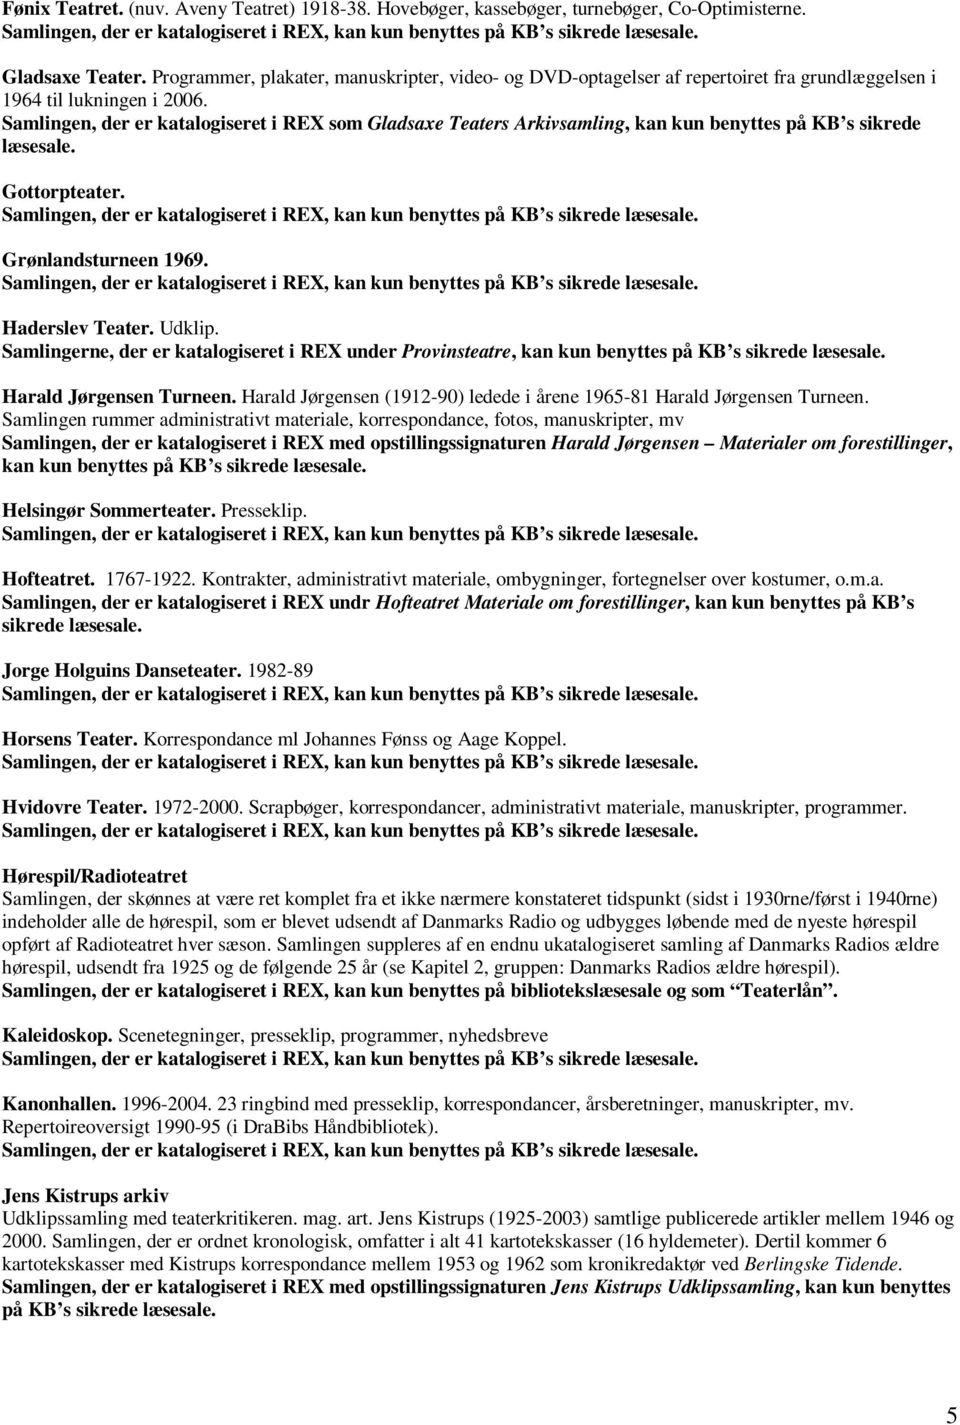 Guide til Dramatisk Biblioteks samlinger - PDF Gratis download